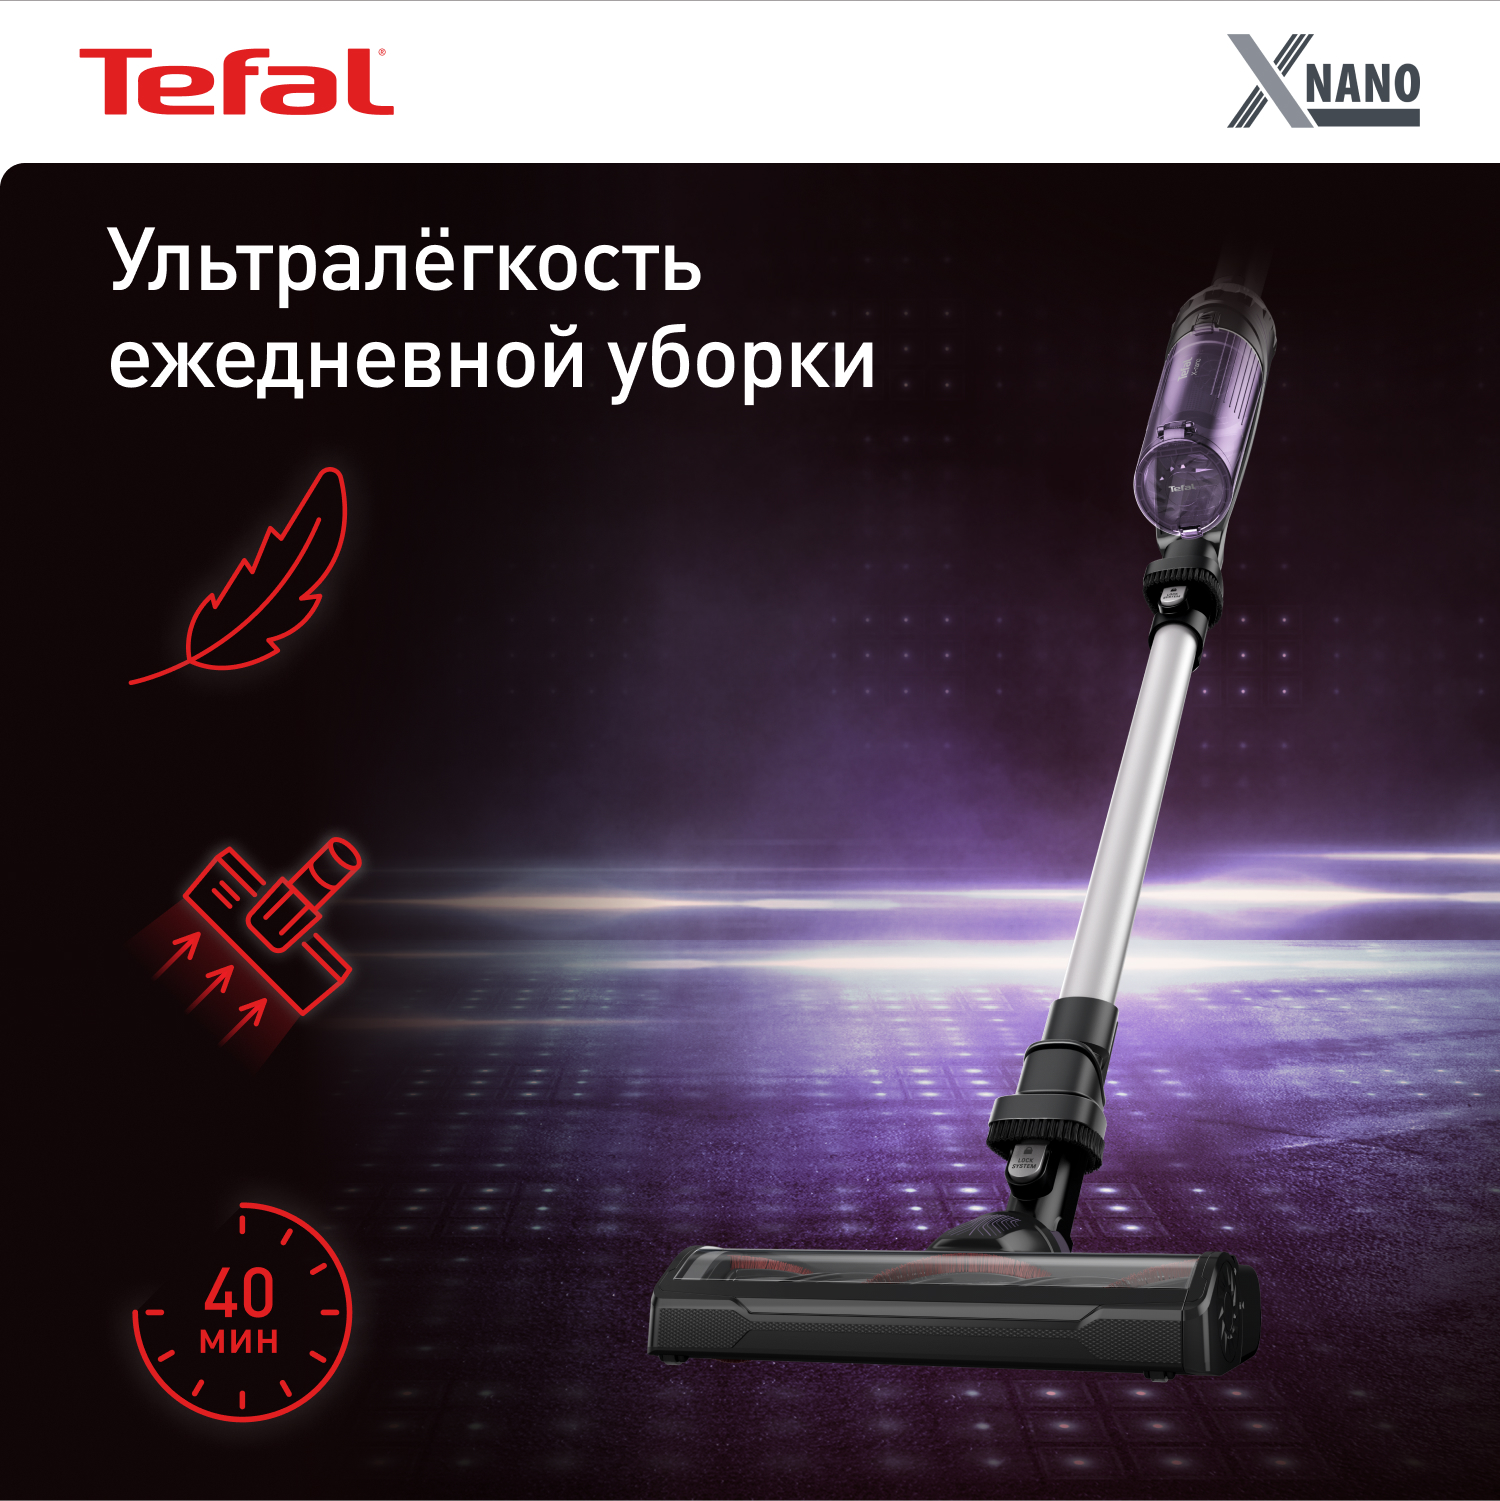 Пылесос беспроводной Tefal X-Nano Essential TY1129WO, черный/фиолетовый аксессуары для камер b w 72mm t pro uv haze 010 mrc nano фильтр